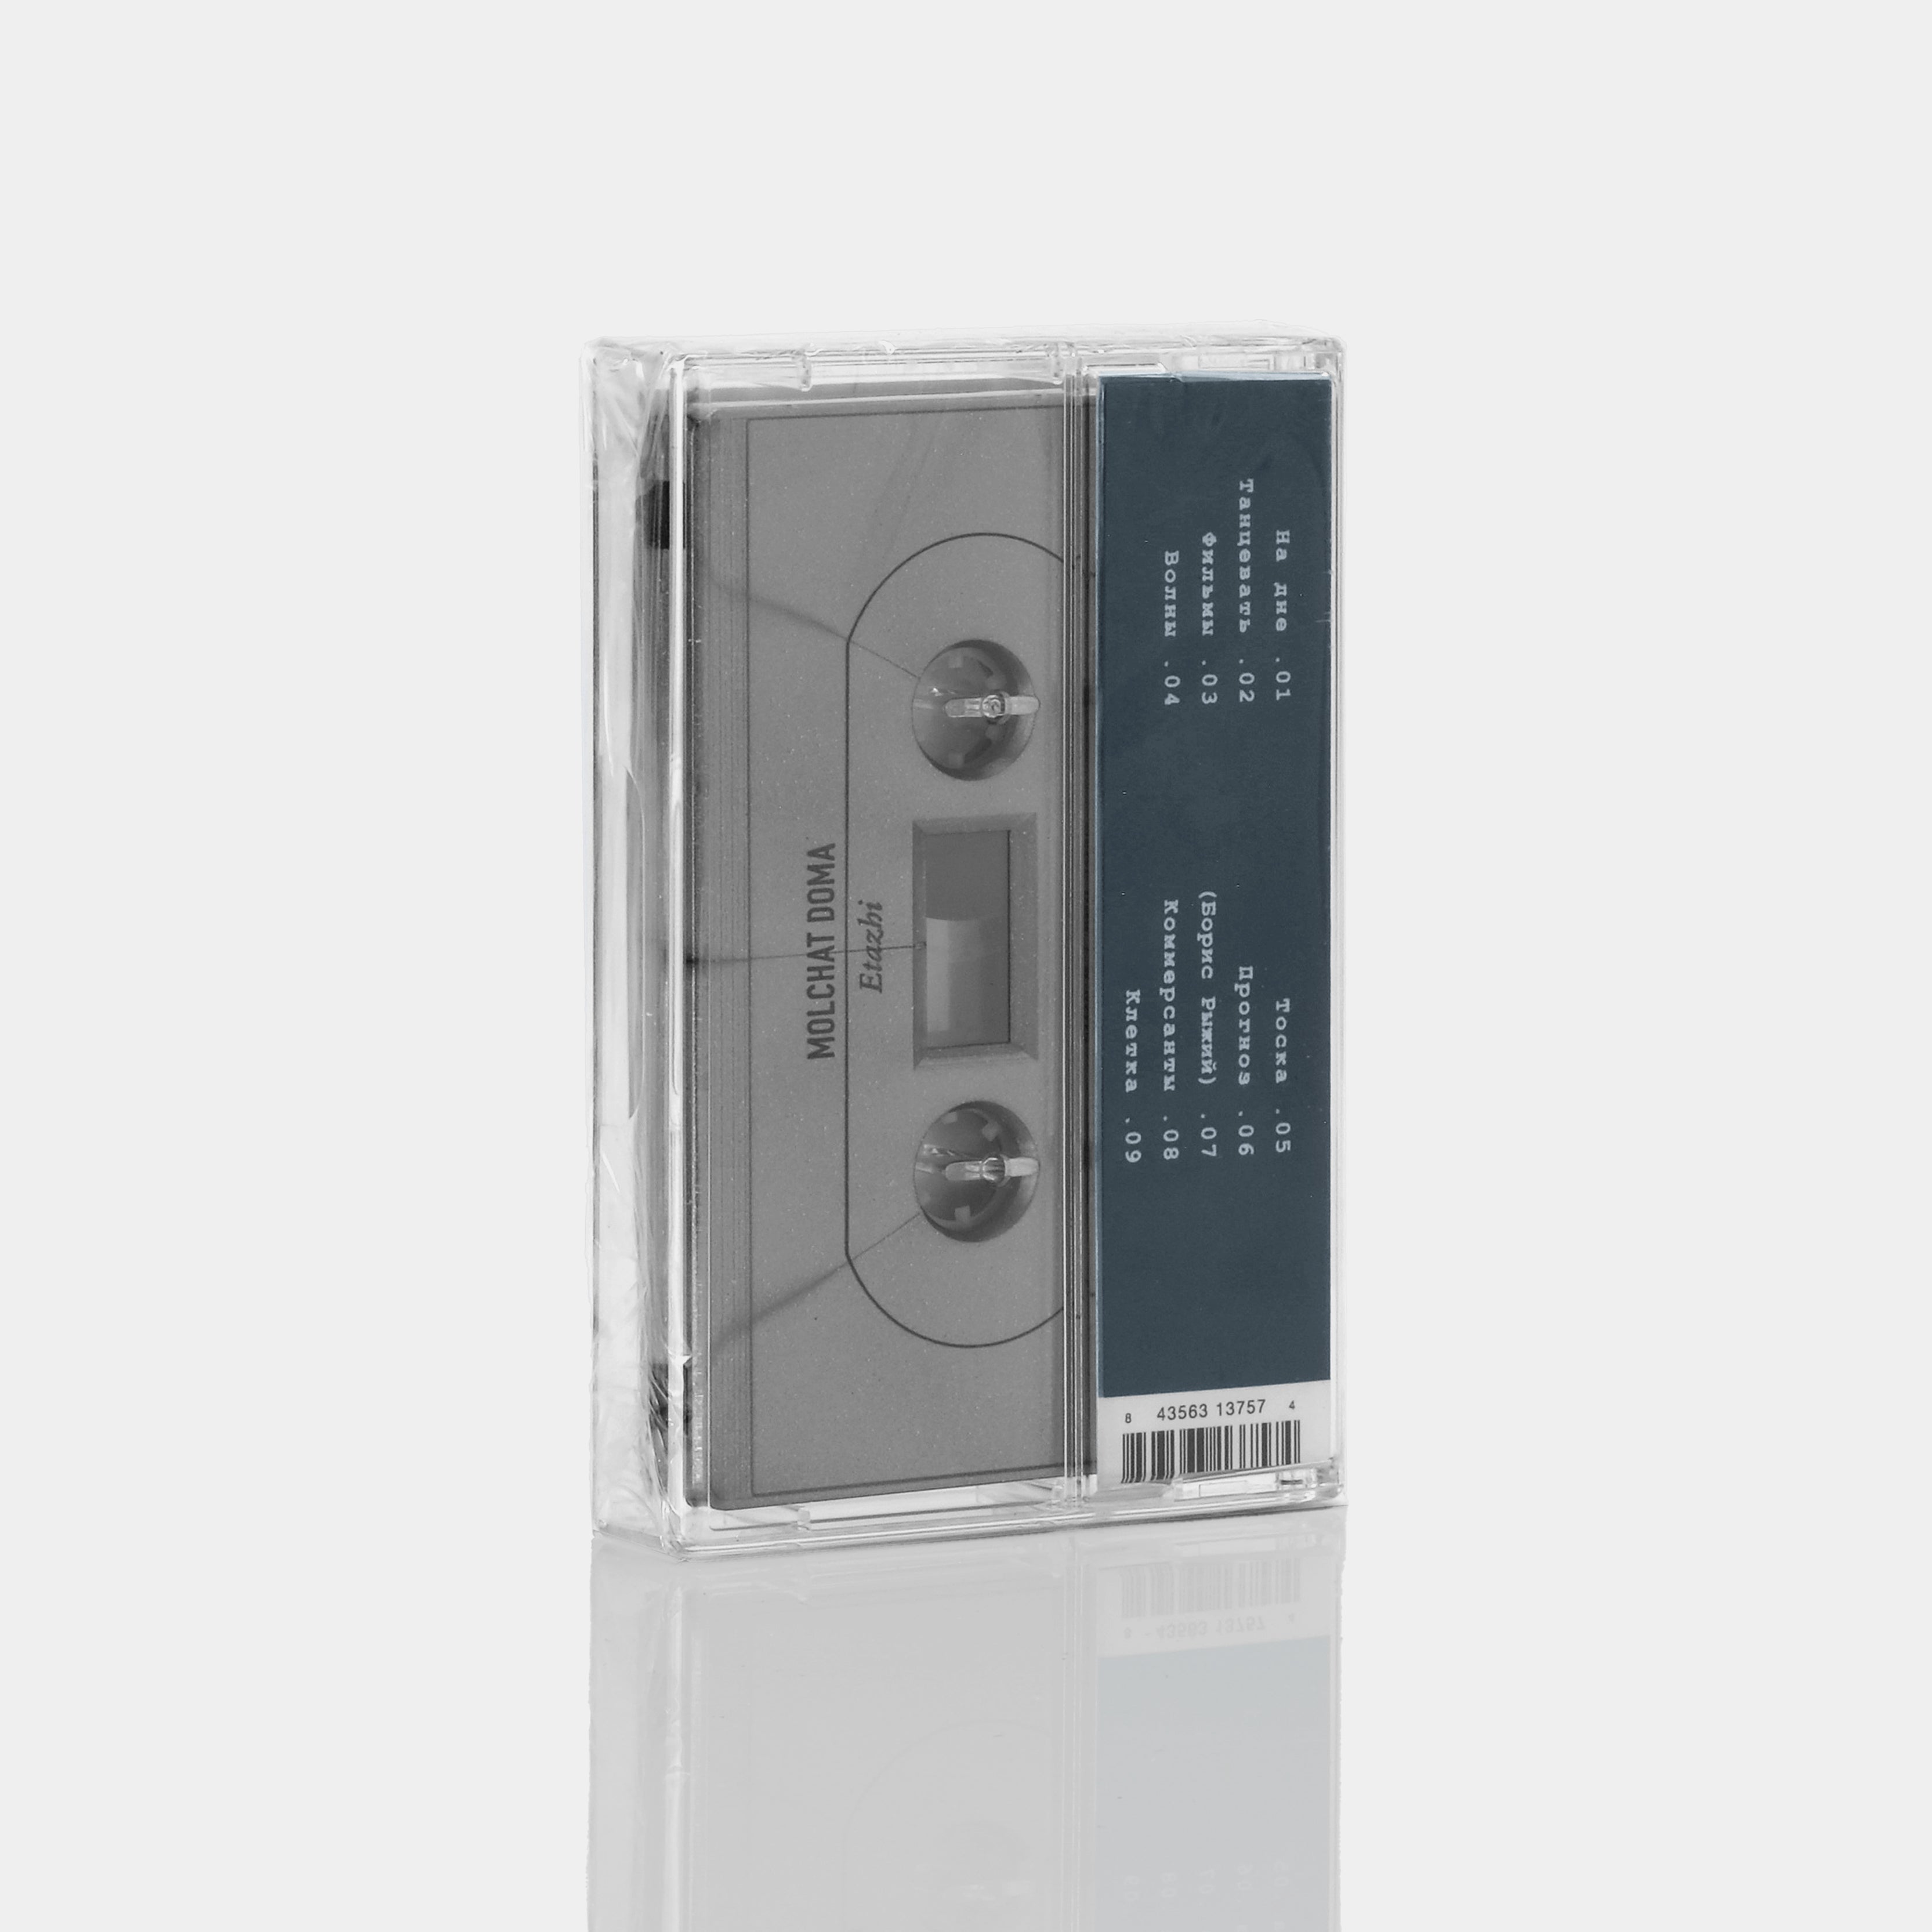 Молчат Дома (Molchat Doma) - Этажи (Floors) Cassette Tape